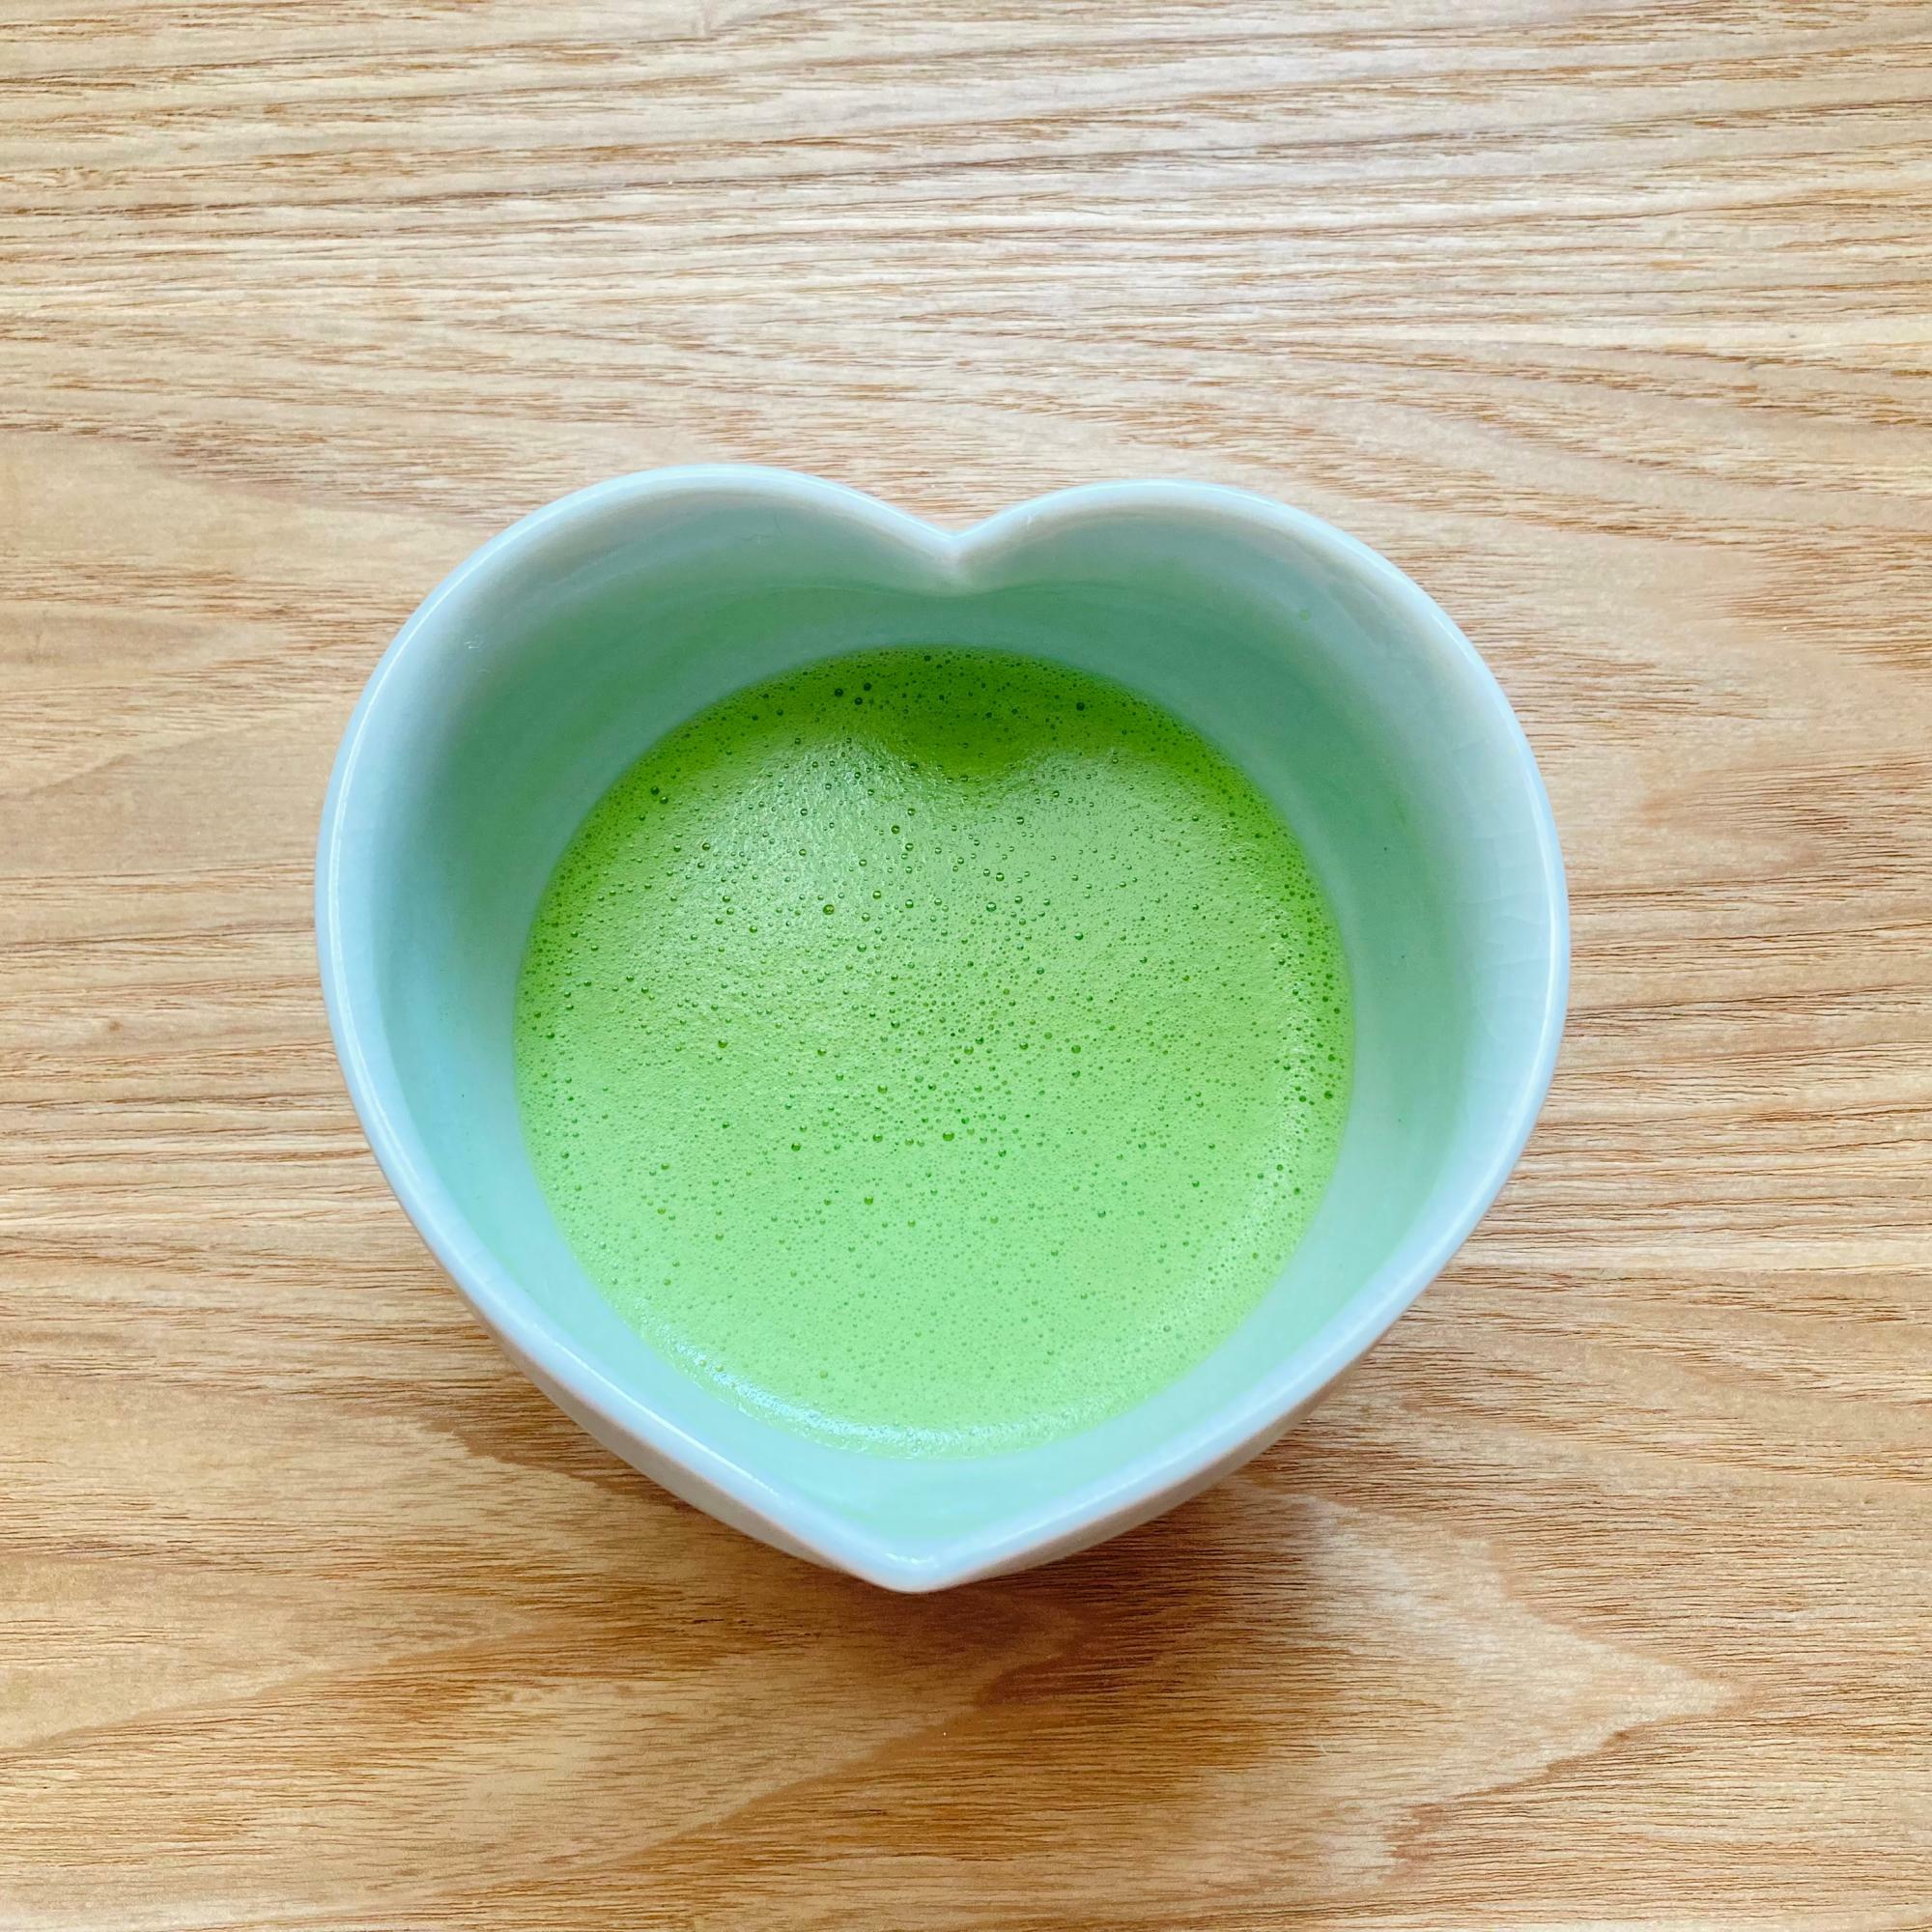 辻喜さんの抹茶を点てた薄茶。写真の品種は「あさひ」